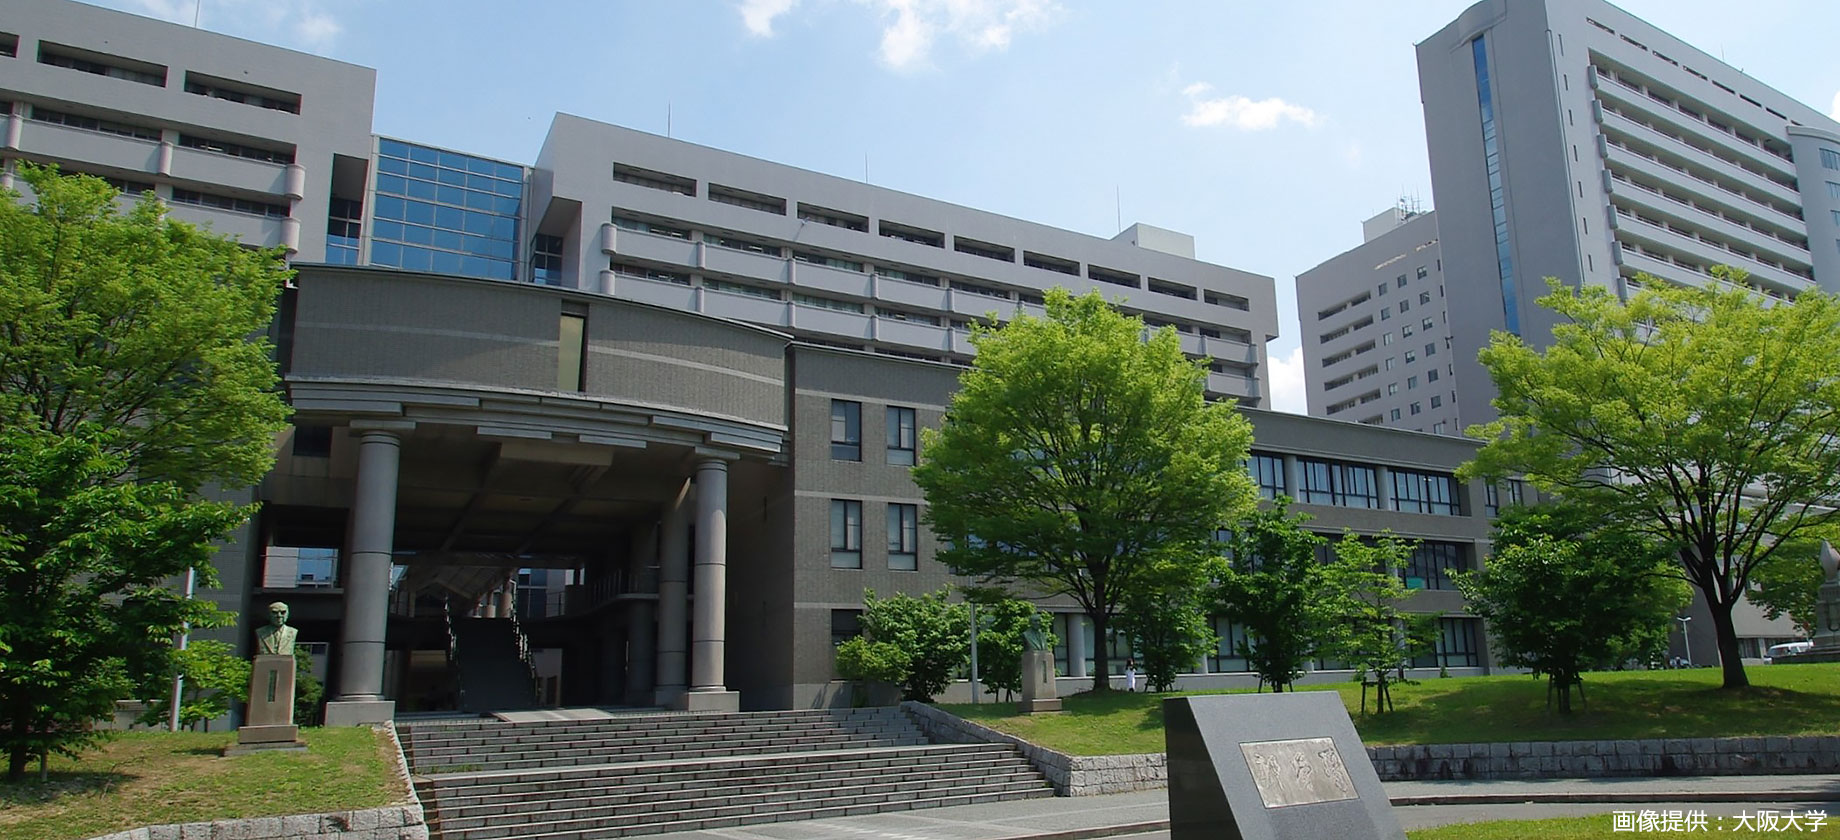 Template:大阪大学の源流・前身諸機関